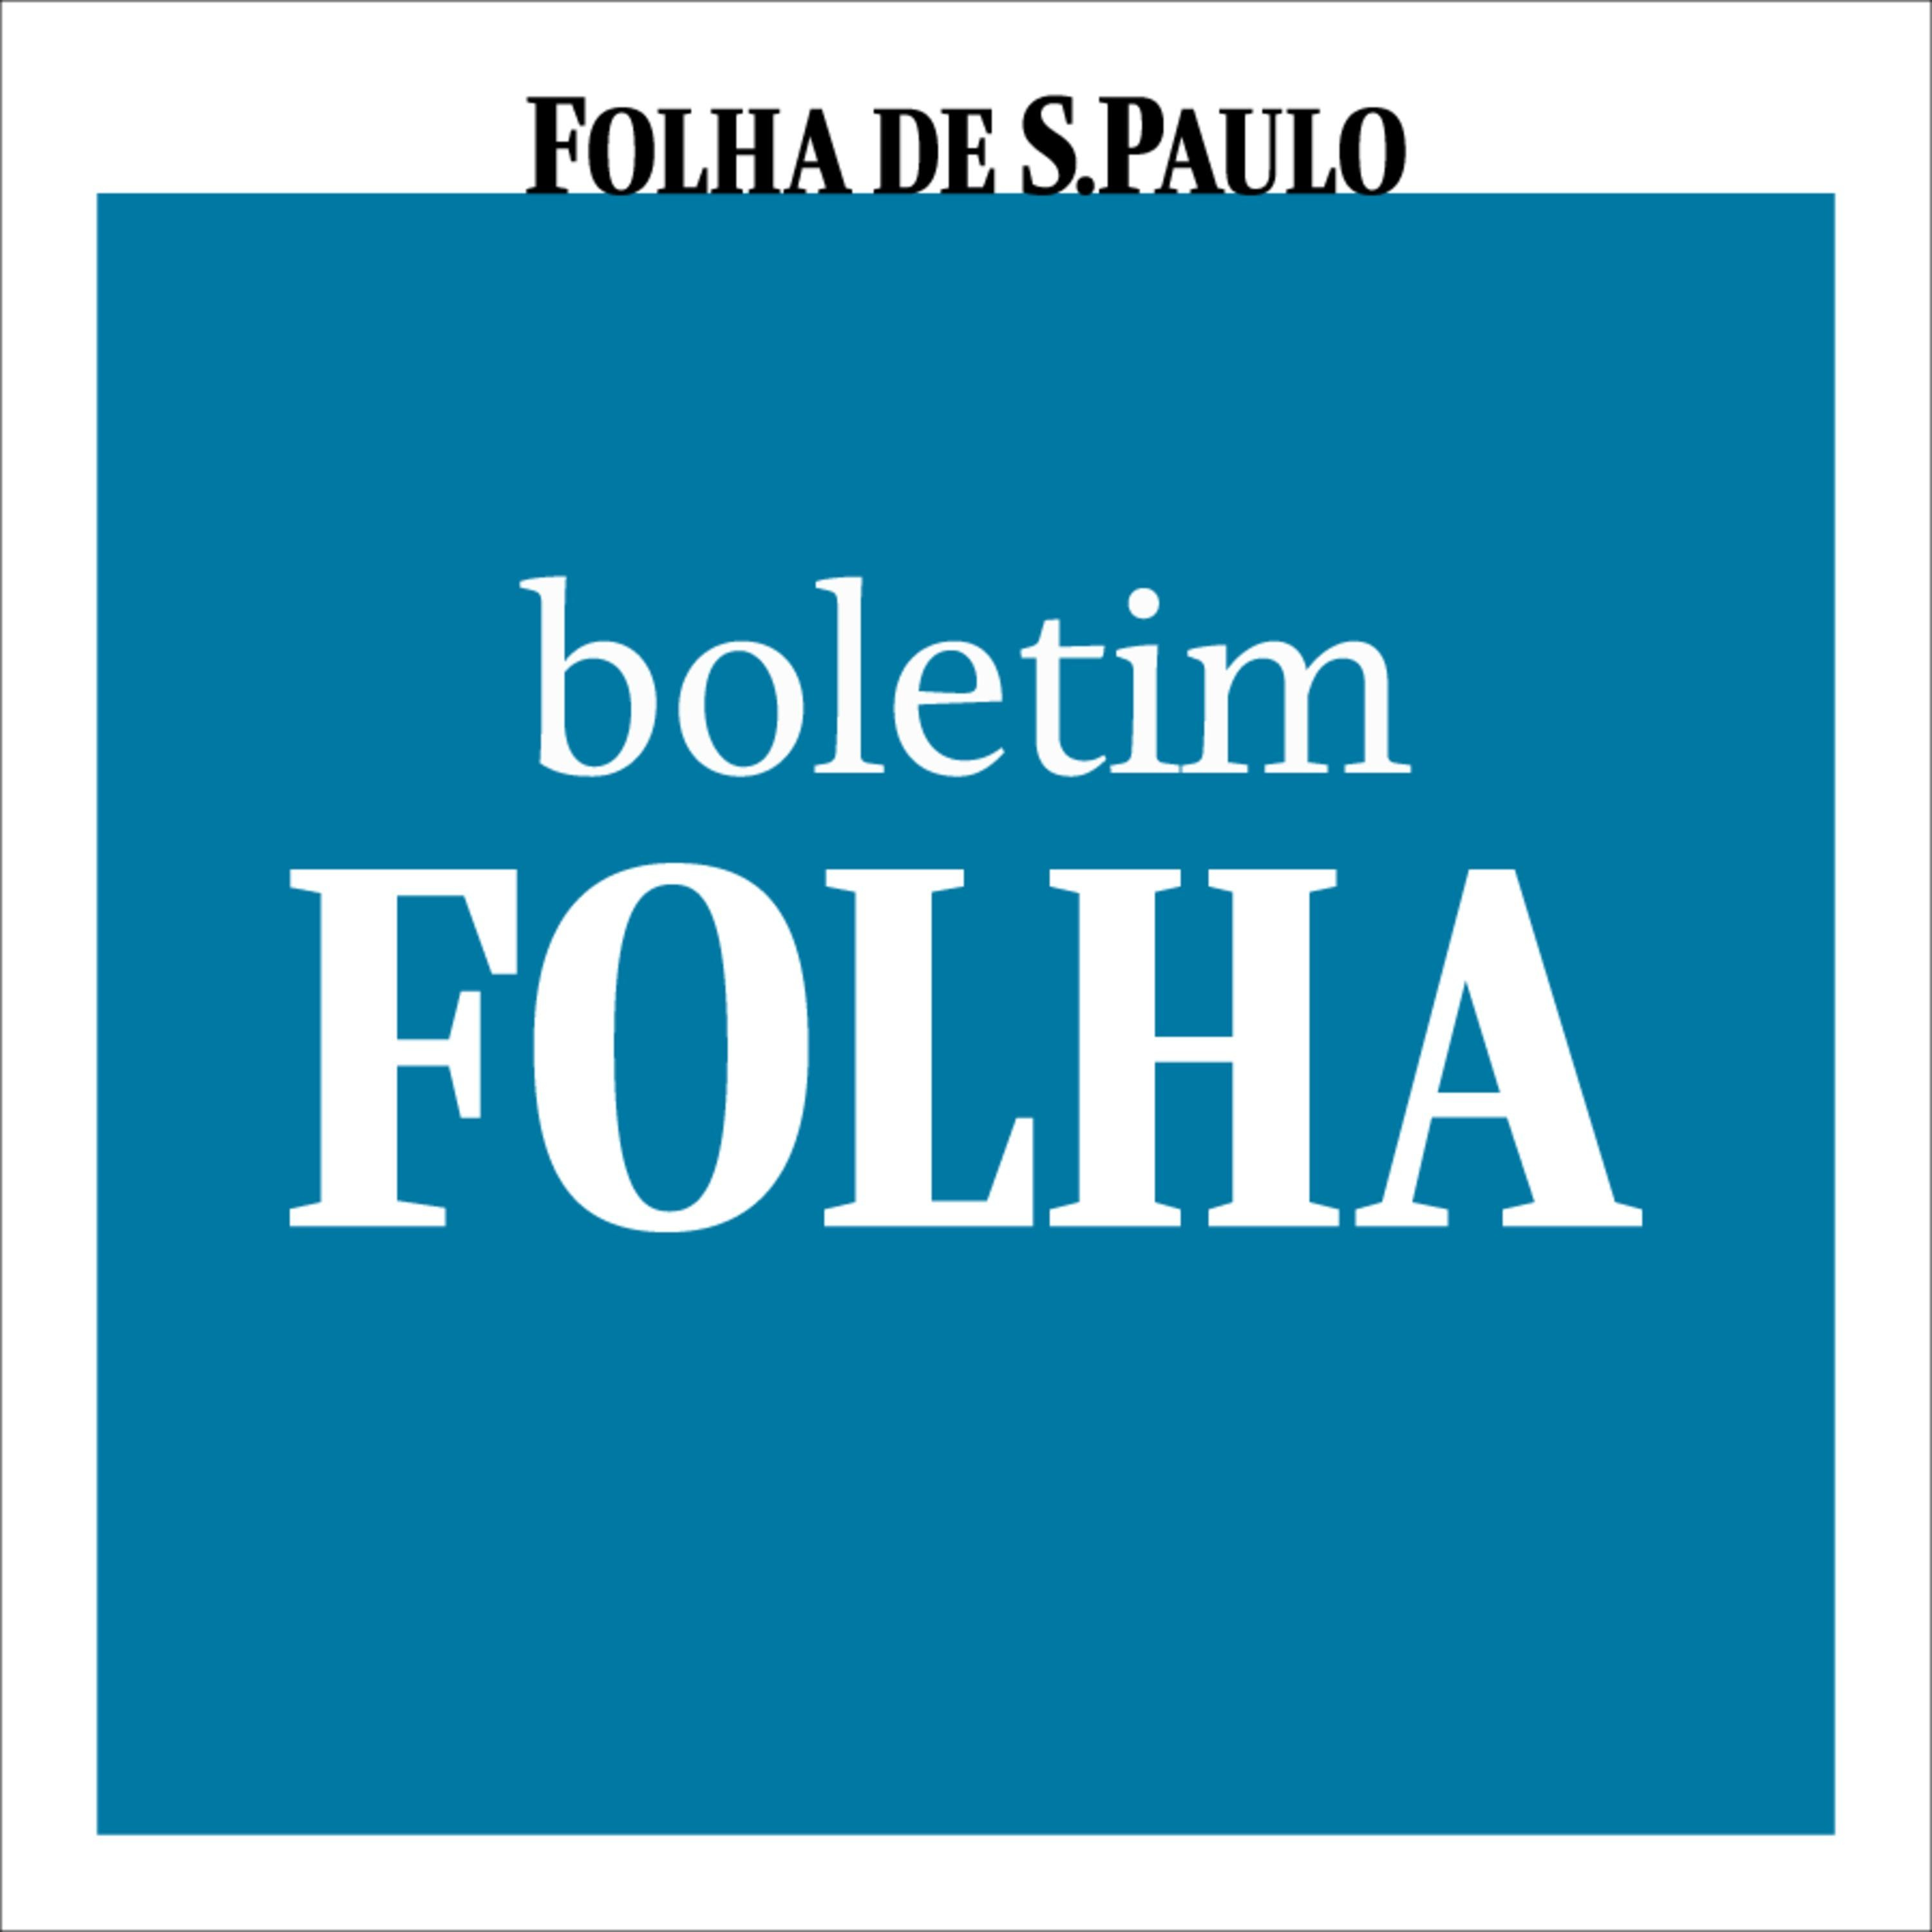 Intervenção de Bolsonaro na Petrobras derrete indicadores financeiros do Brasil